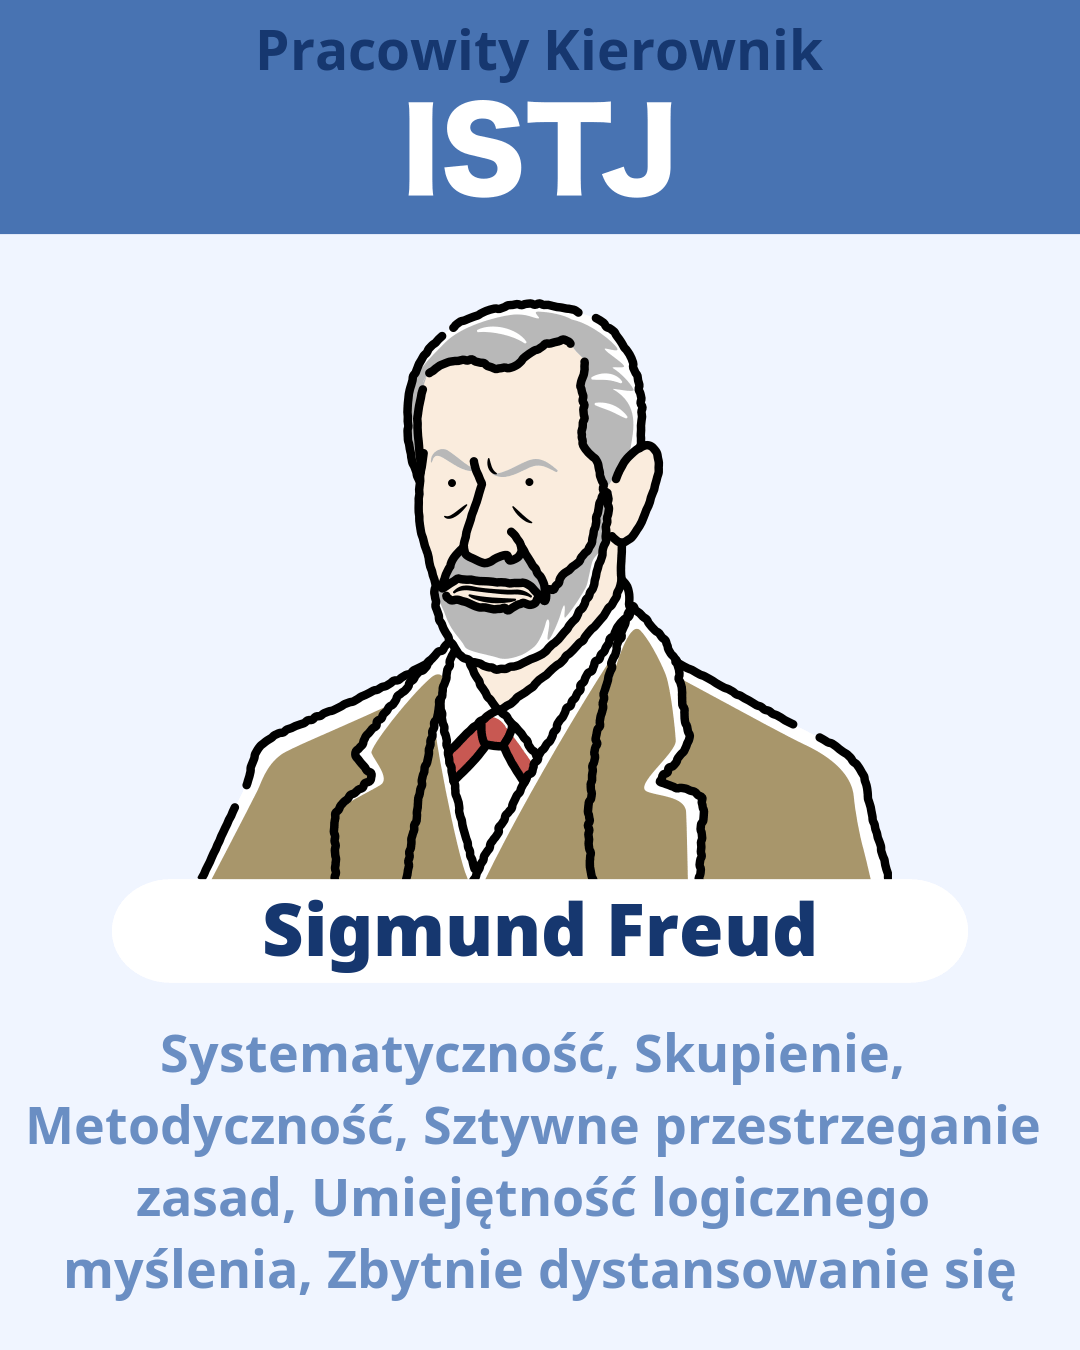 Sigmund Freud - ISTJ